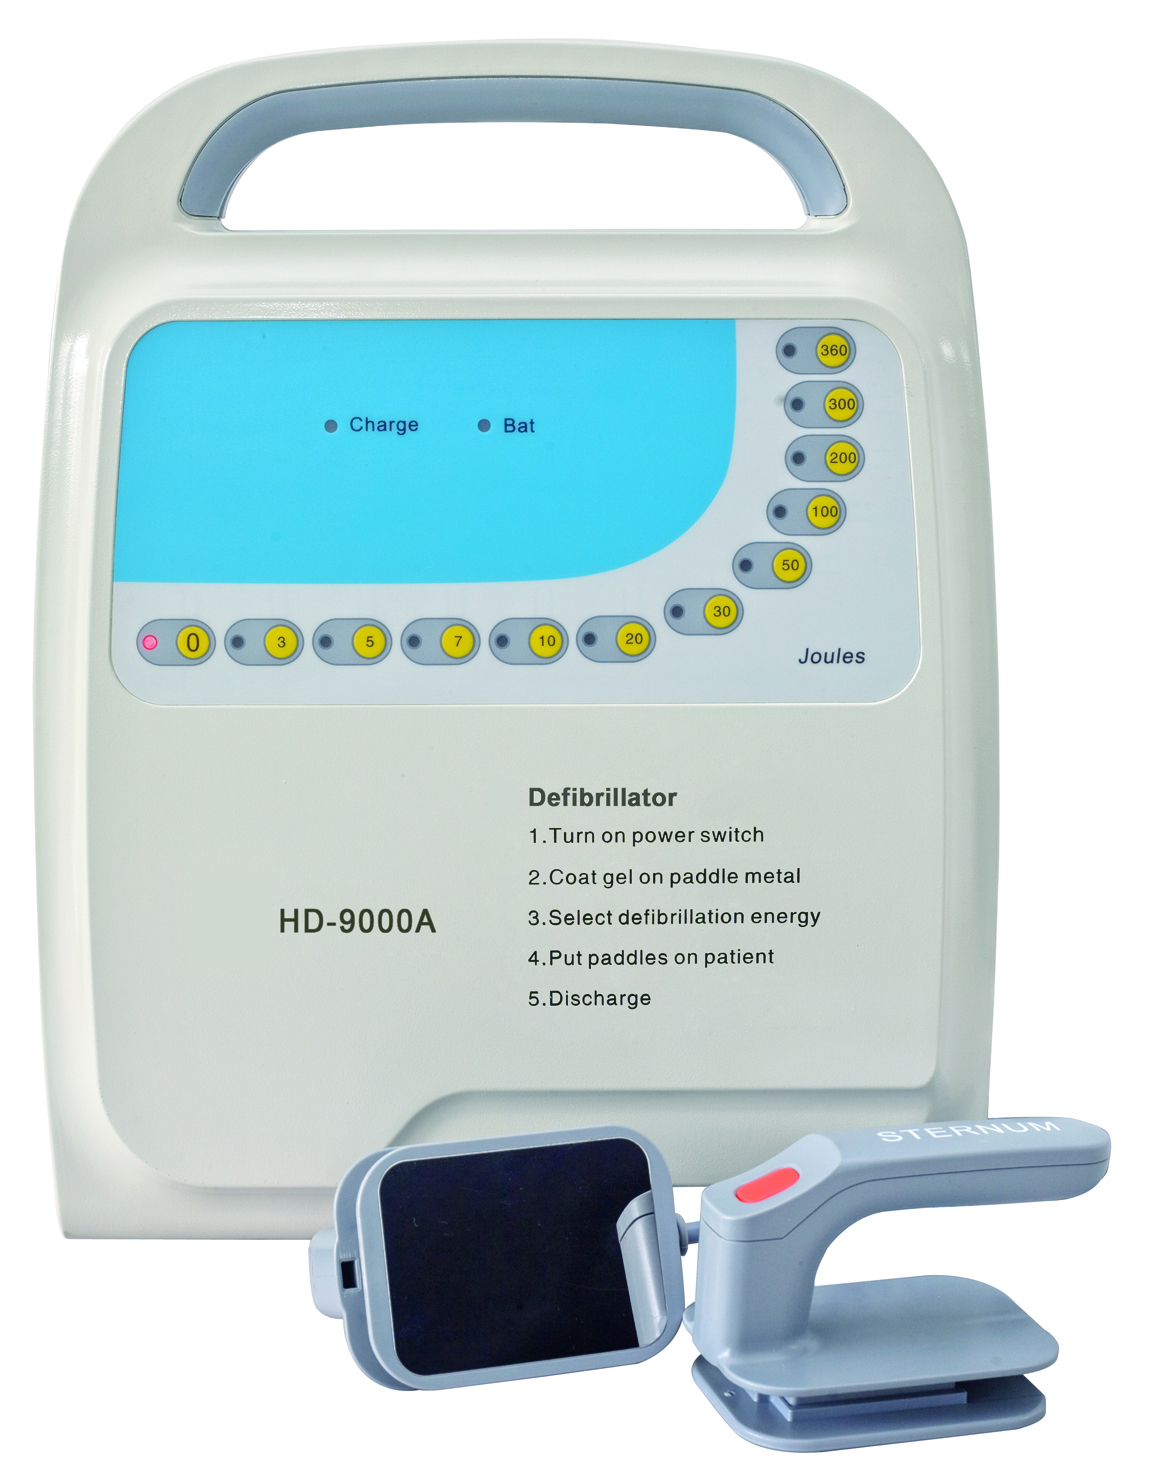 HD-9000A Defibrillator